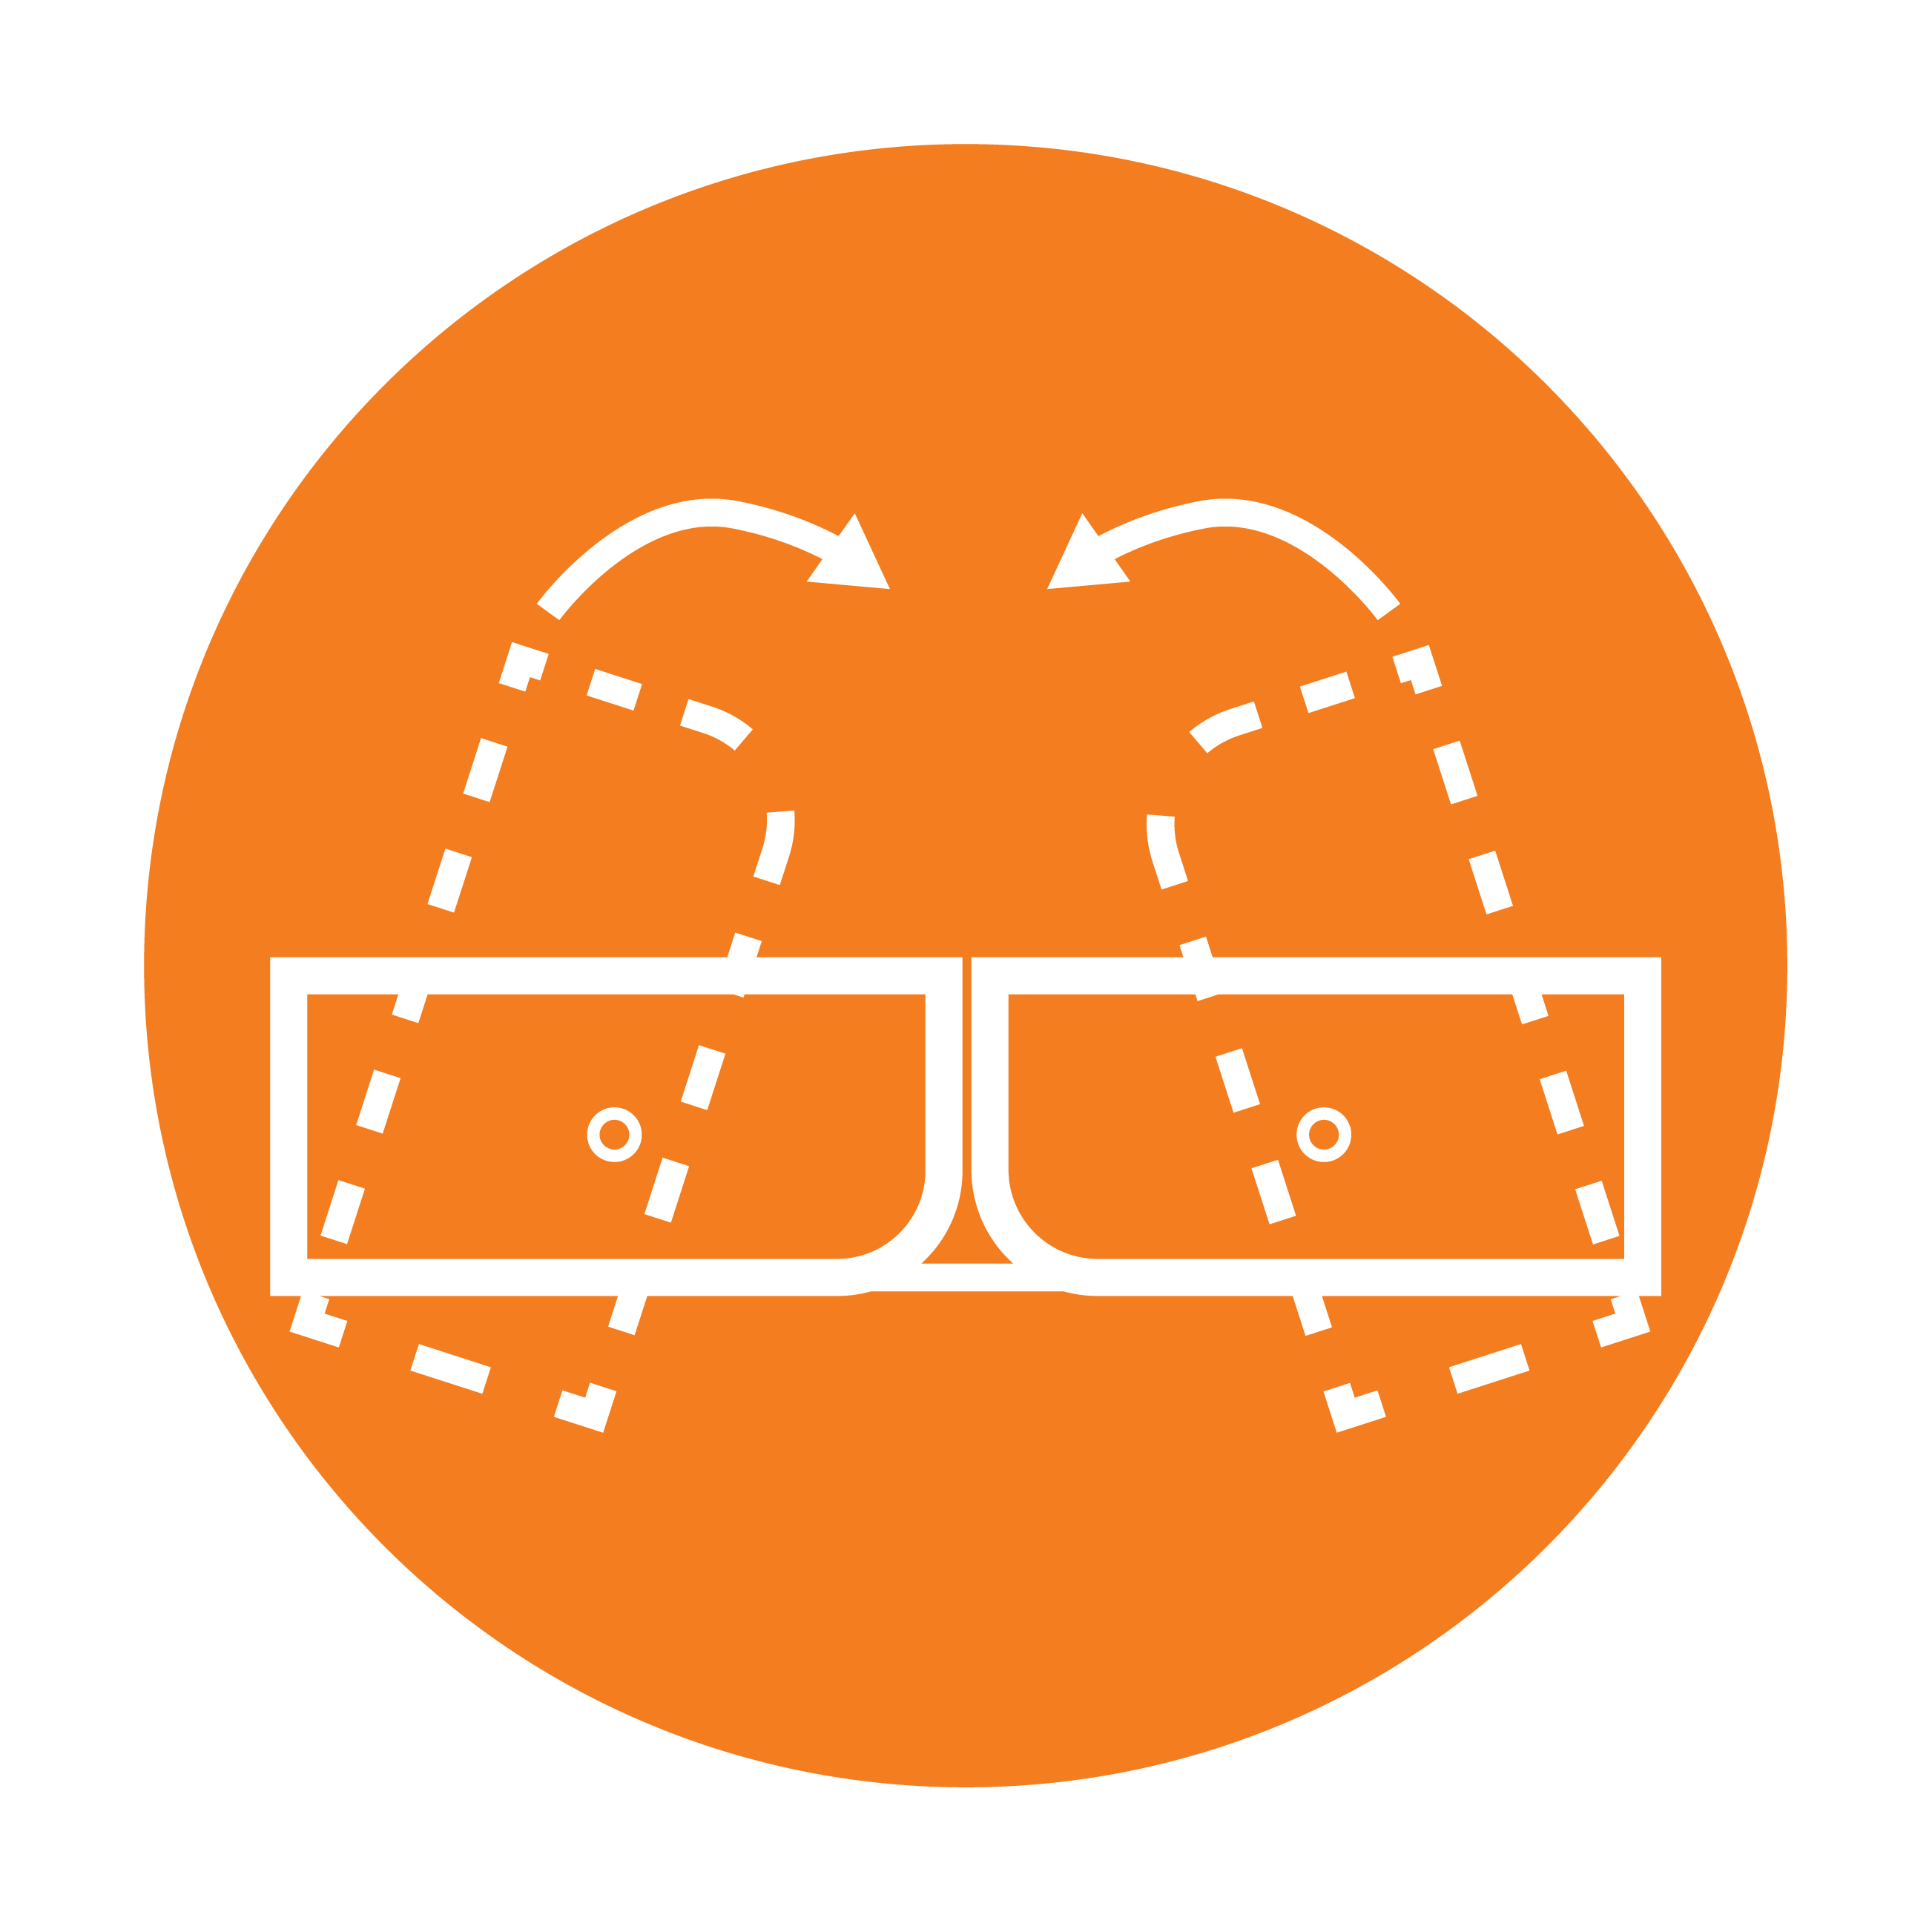 Esbit Icon in Orange zeigt Klapp-Prinzip vom Taschenkocher als Piktogramm. 